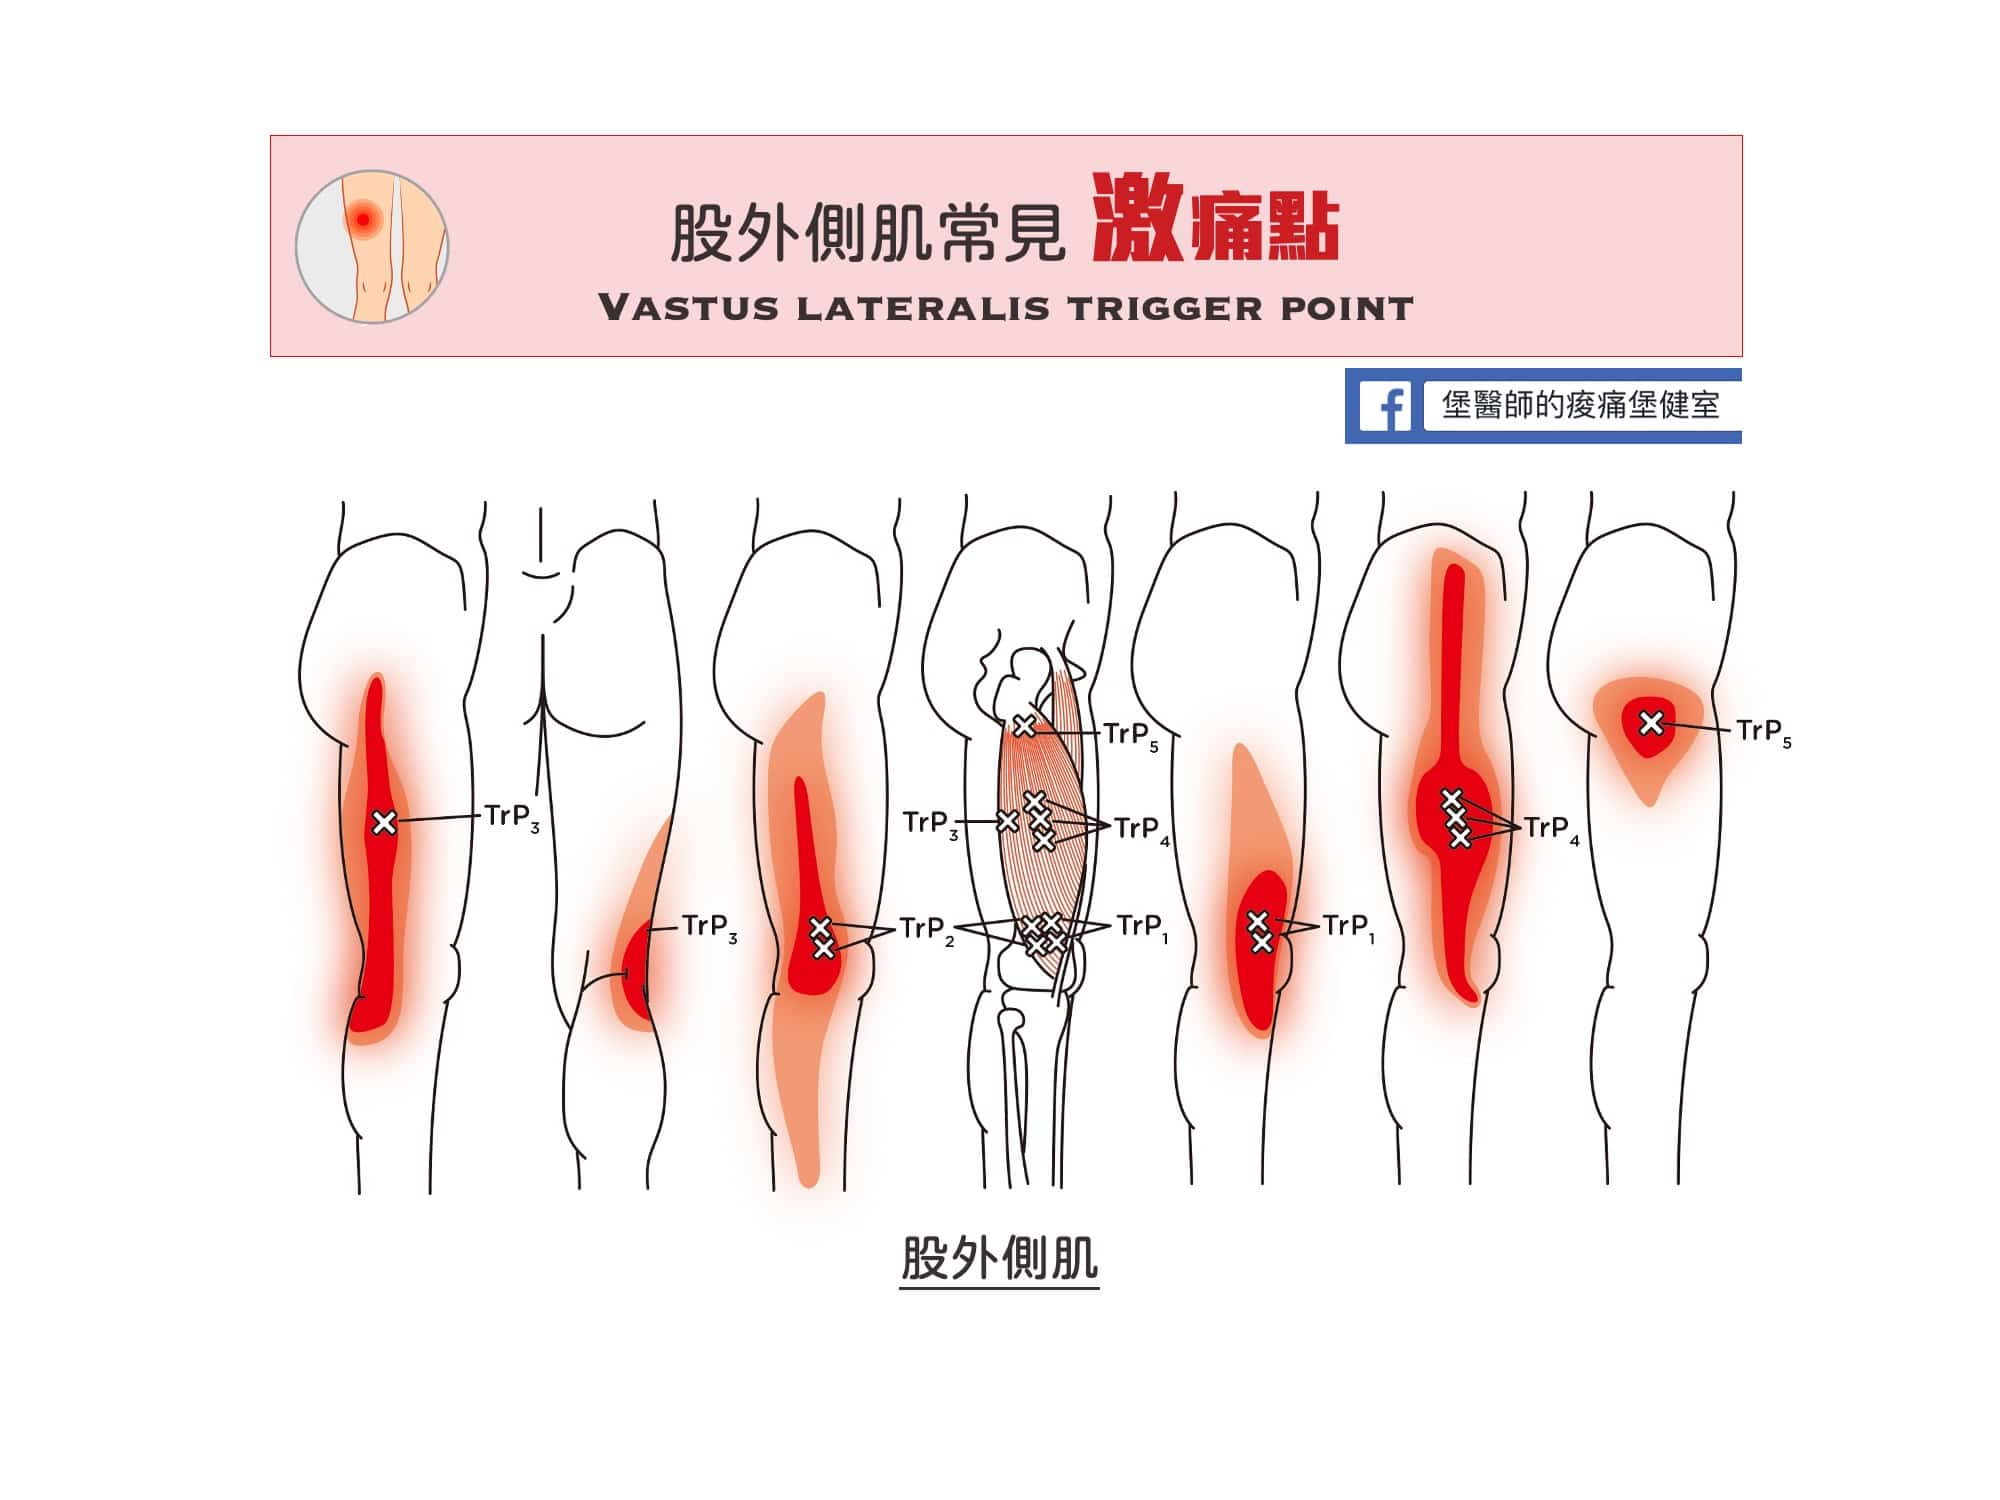 大腿膝蓋痛-股外側肌常見激痛點